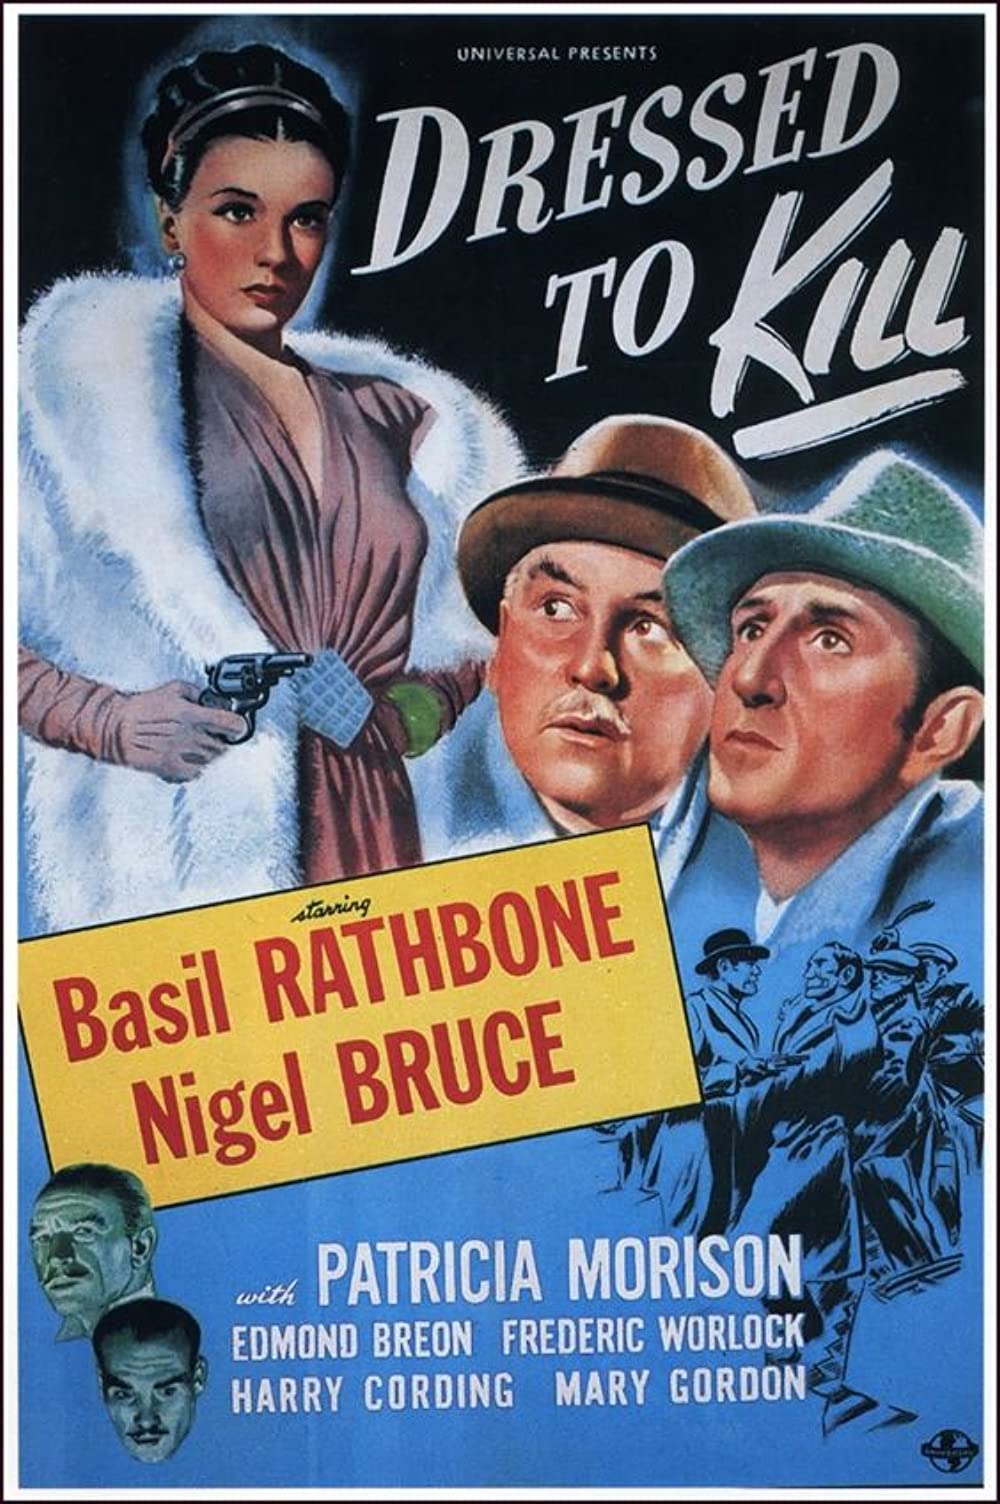 ดูหนังออนไลน์ฟรี Dressed to Kill (1946) เดรสทฺ ทู คิล